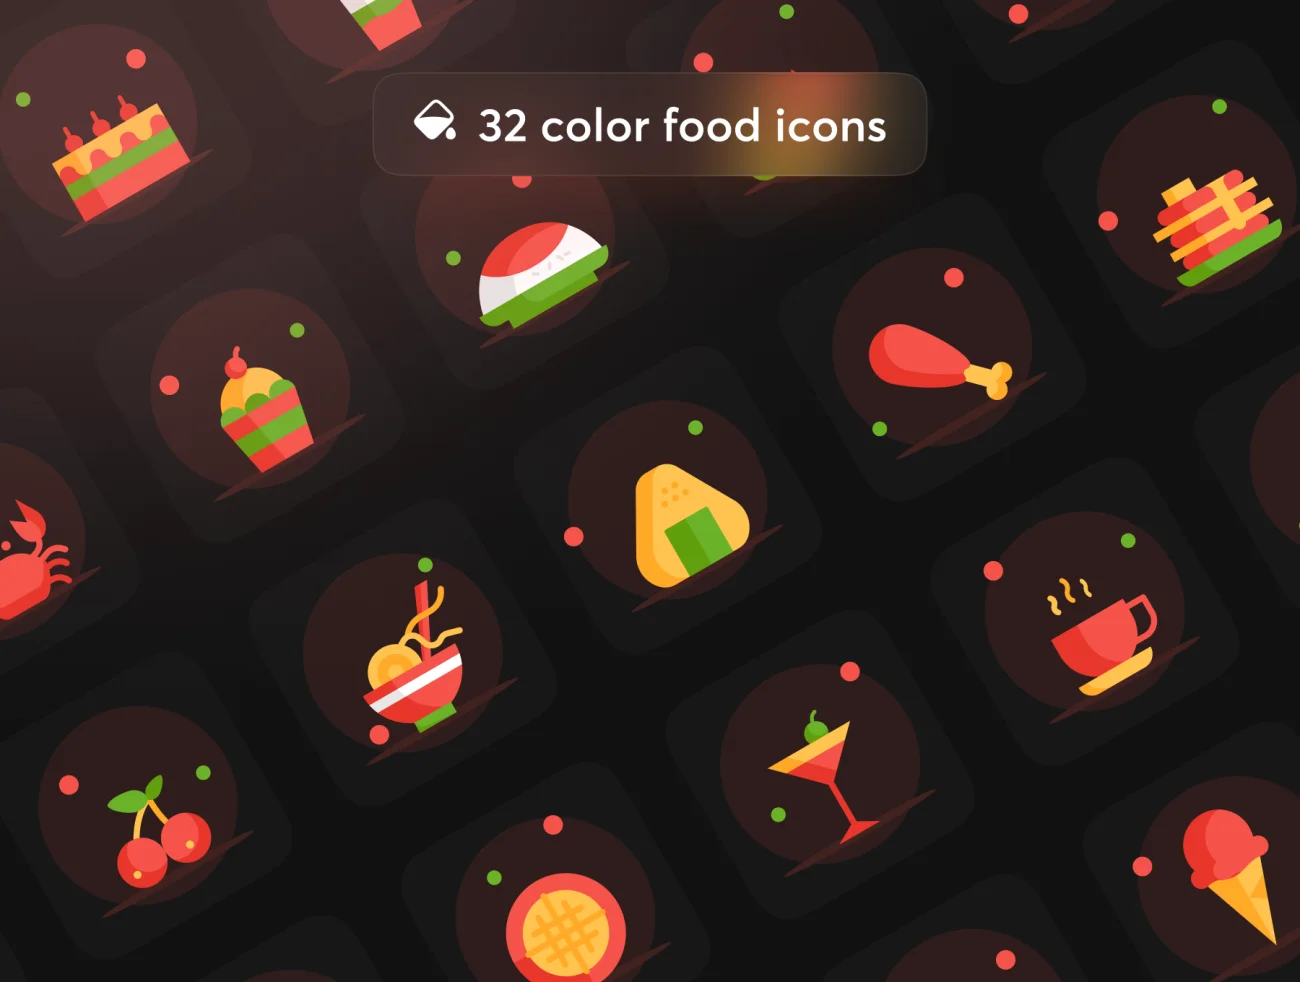 174屏在线外卖点餐应用设计工具包套件 Delaft - Food Ordering App UI Kit-3D/图标、UI/UX、ui套件、主页、介绍、付款、图表、地图、应用、支付、预订-到位啦UI